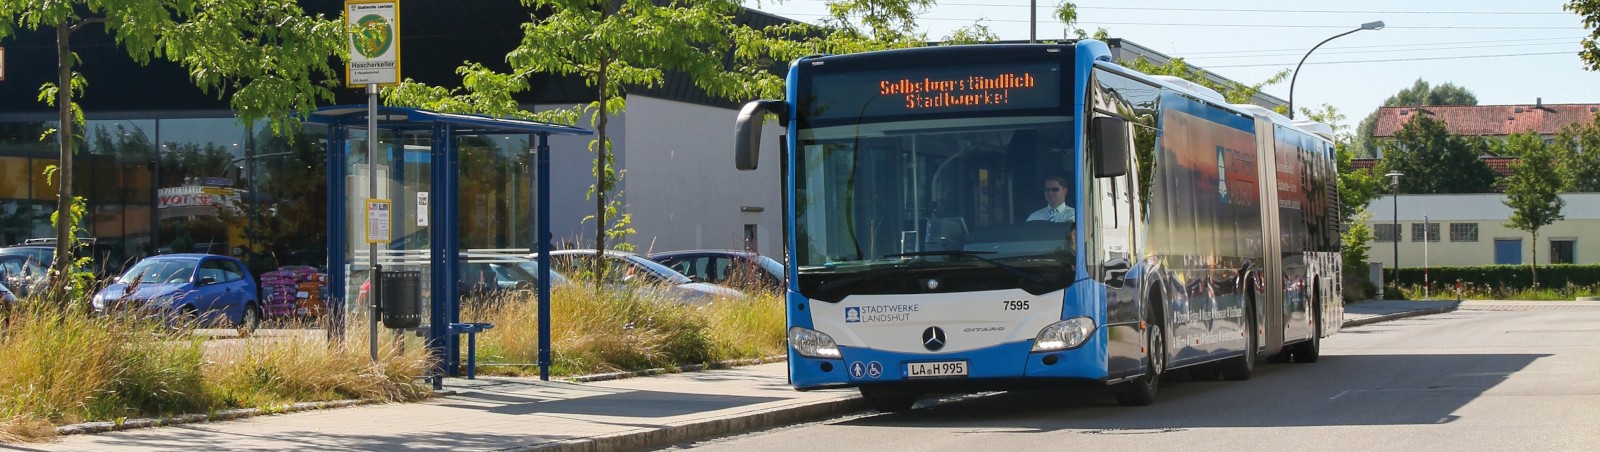 Bus an Bushaltestelle in Landshut